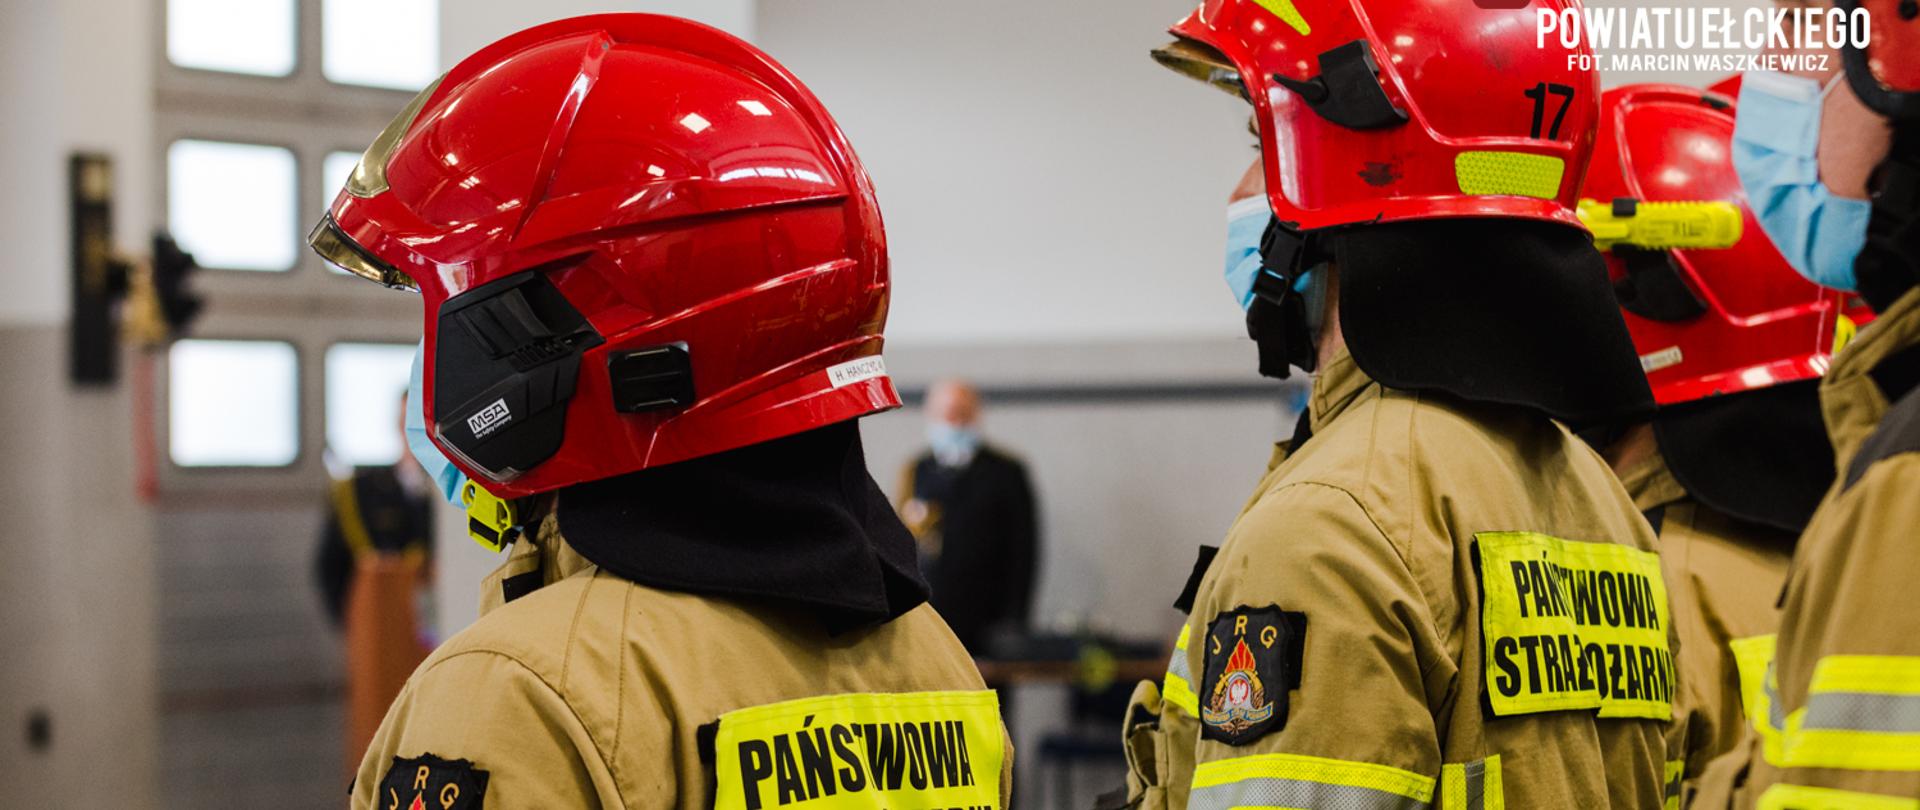 Zdjęcie przedstawia strażaków w szyku stojących tyłem do fotografa